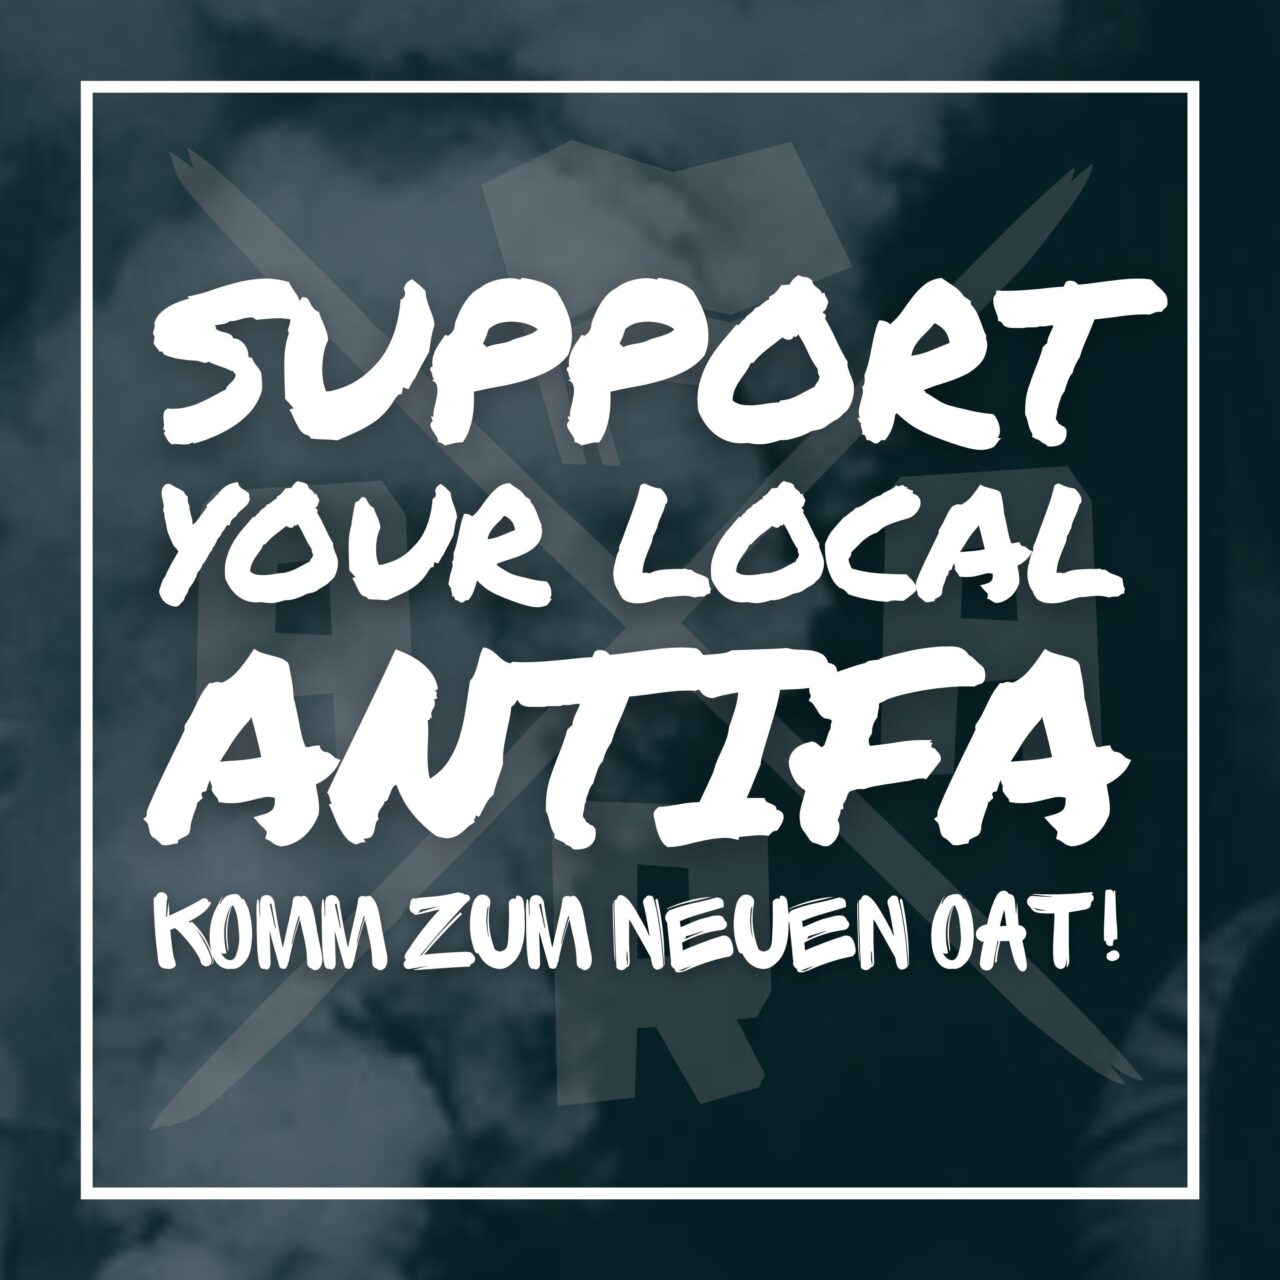 Support your Local Antifa - komm zum neuen OAT!